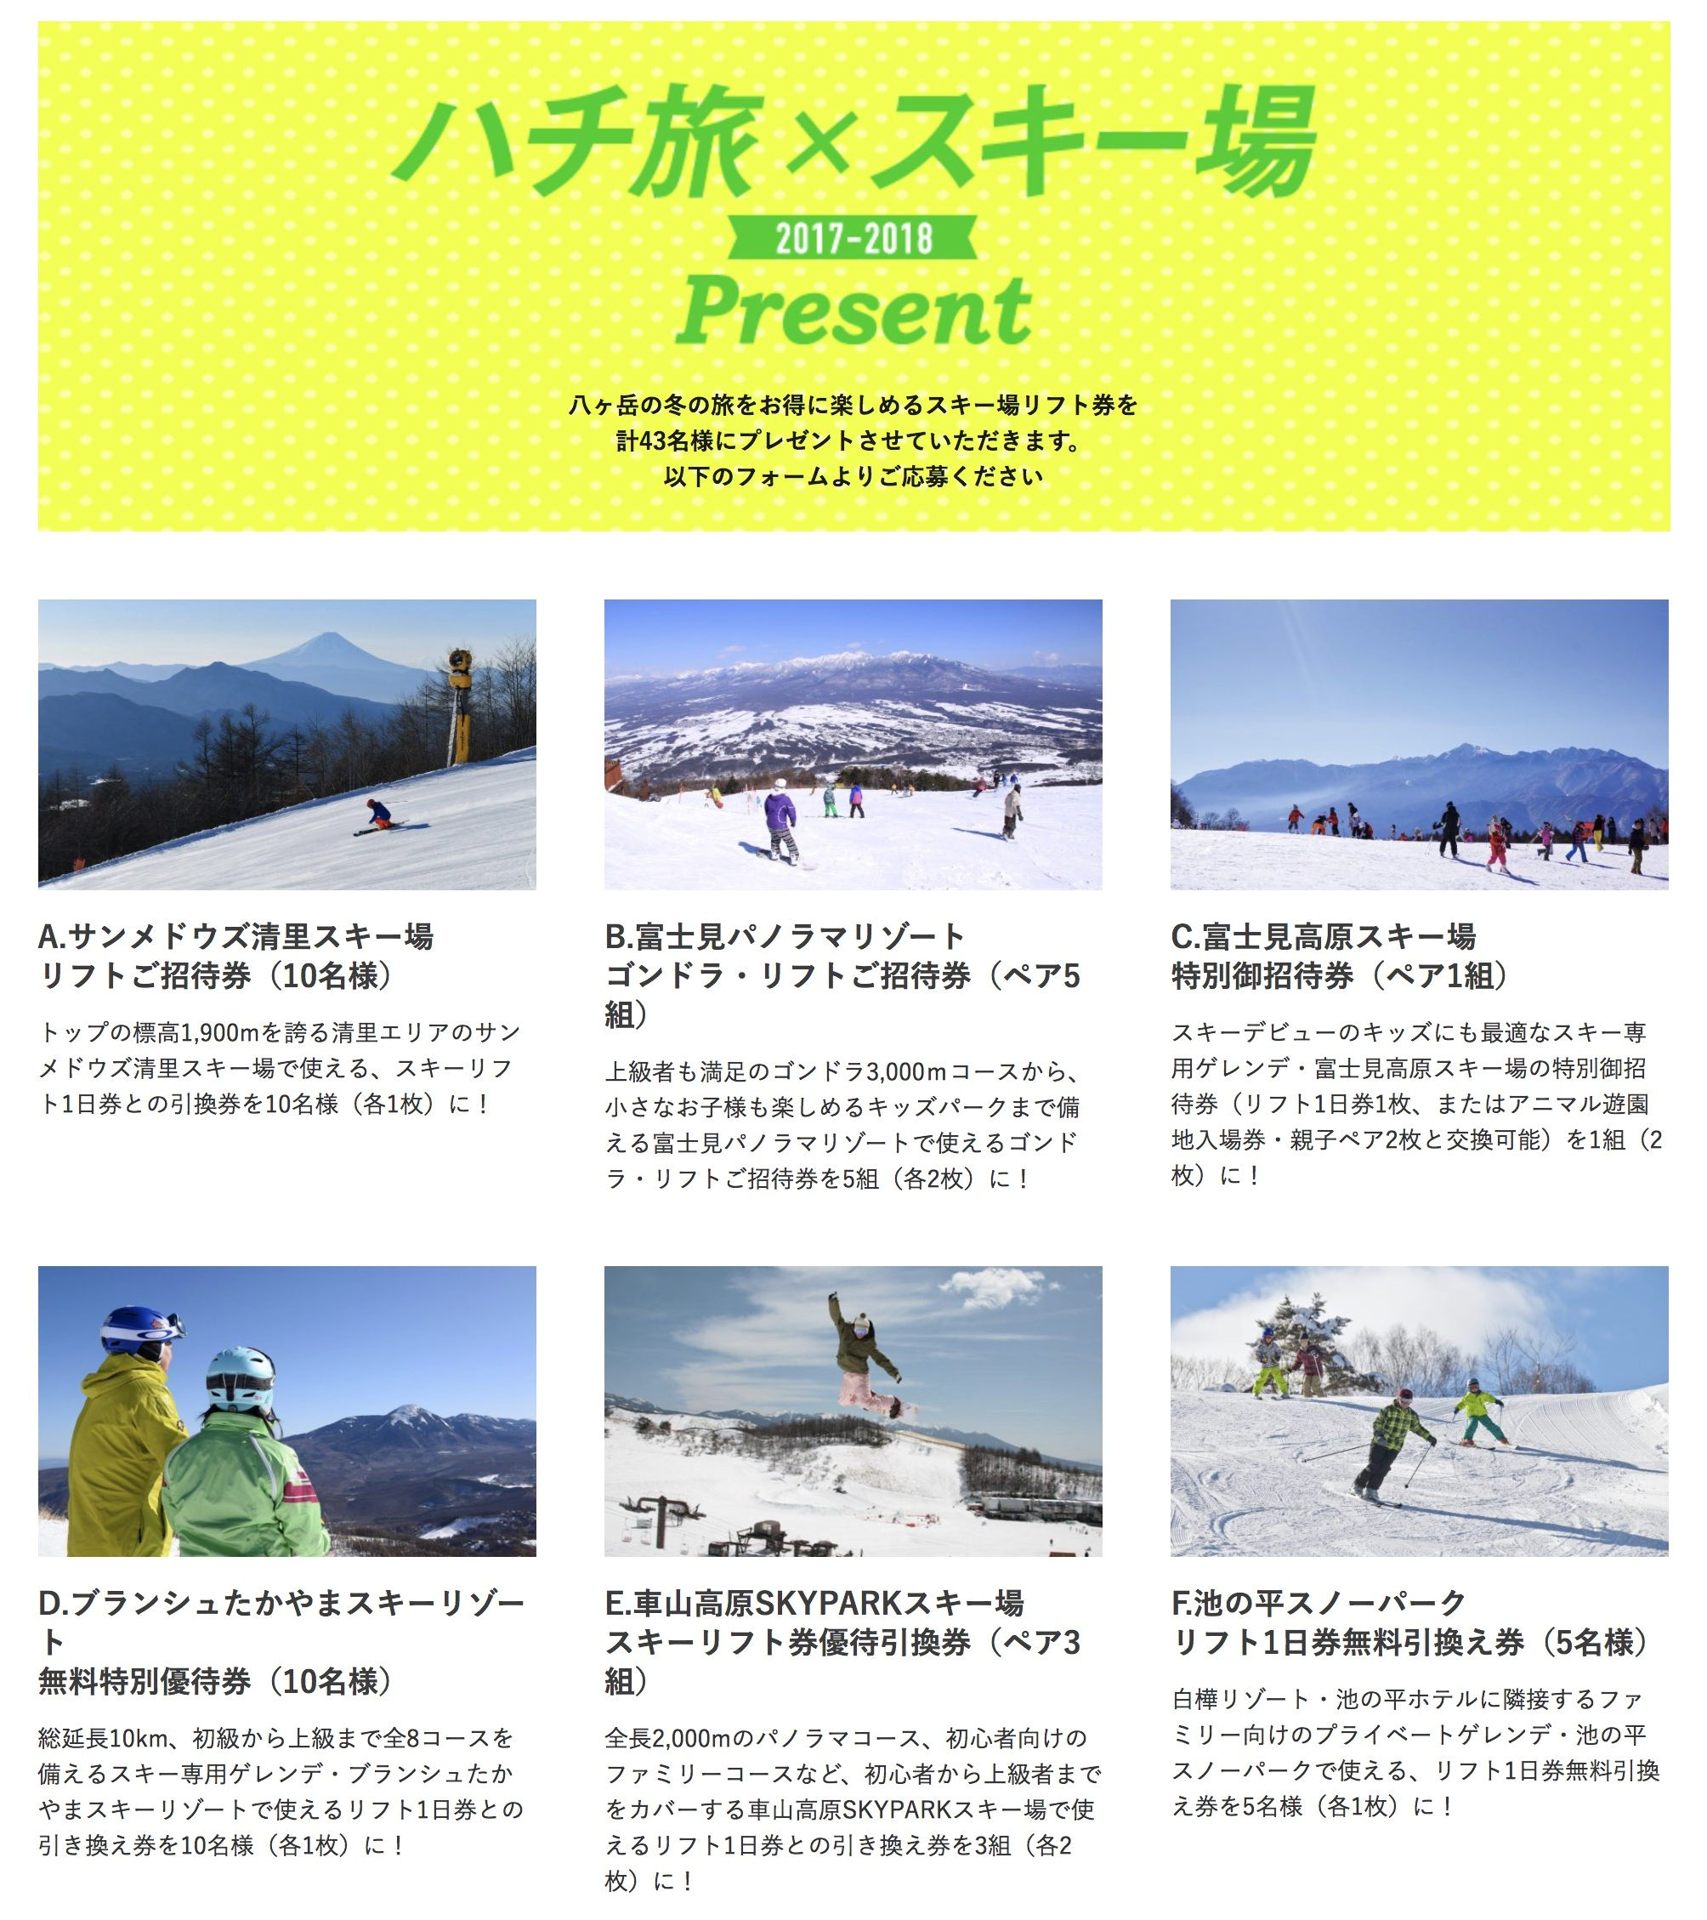 富士見パノラマリゾート ゴンドラ・リフトご招待券 - スキー場